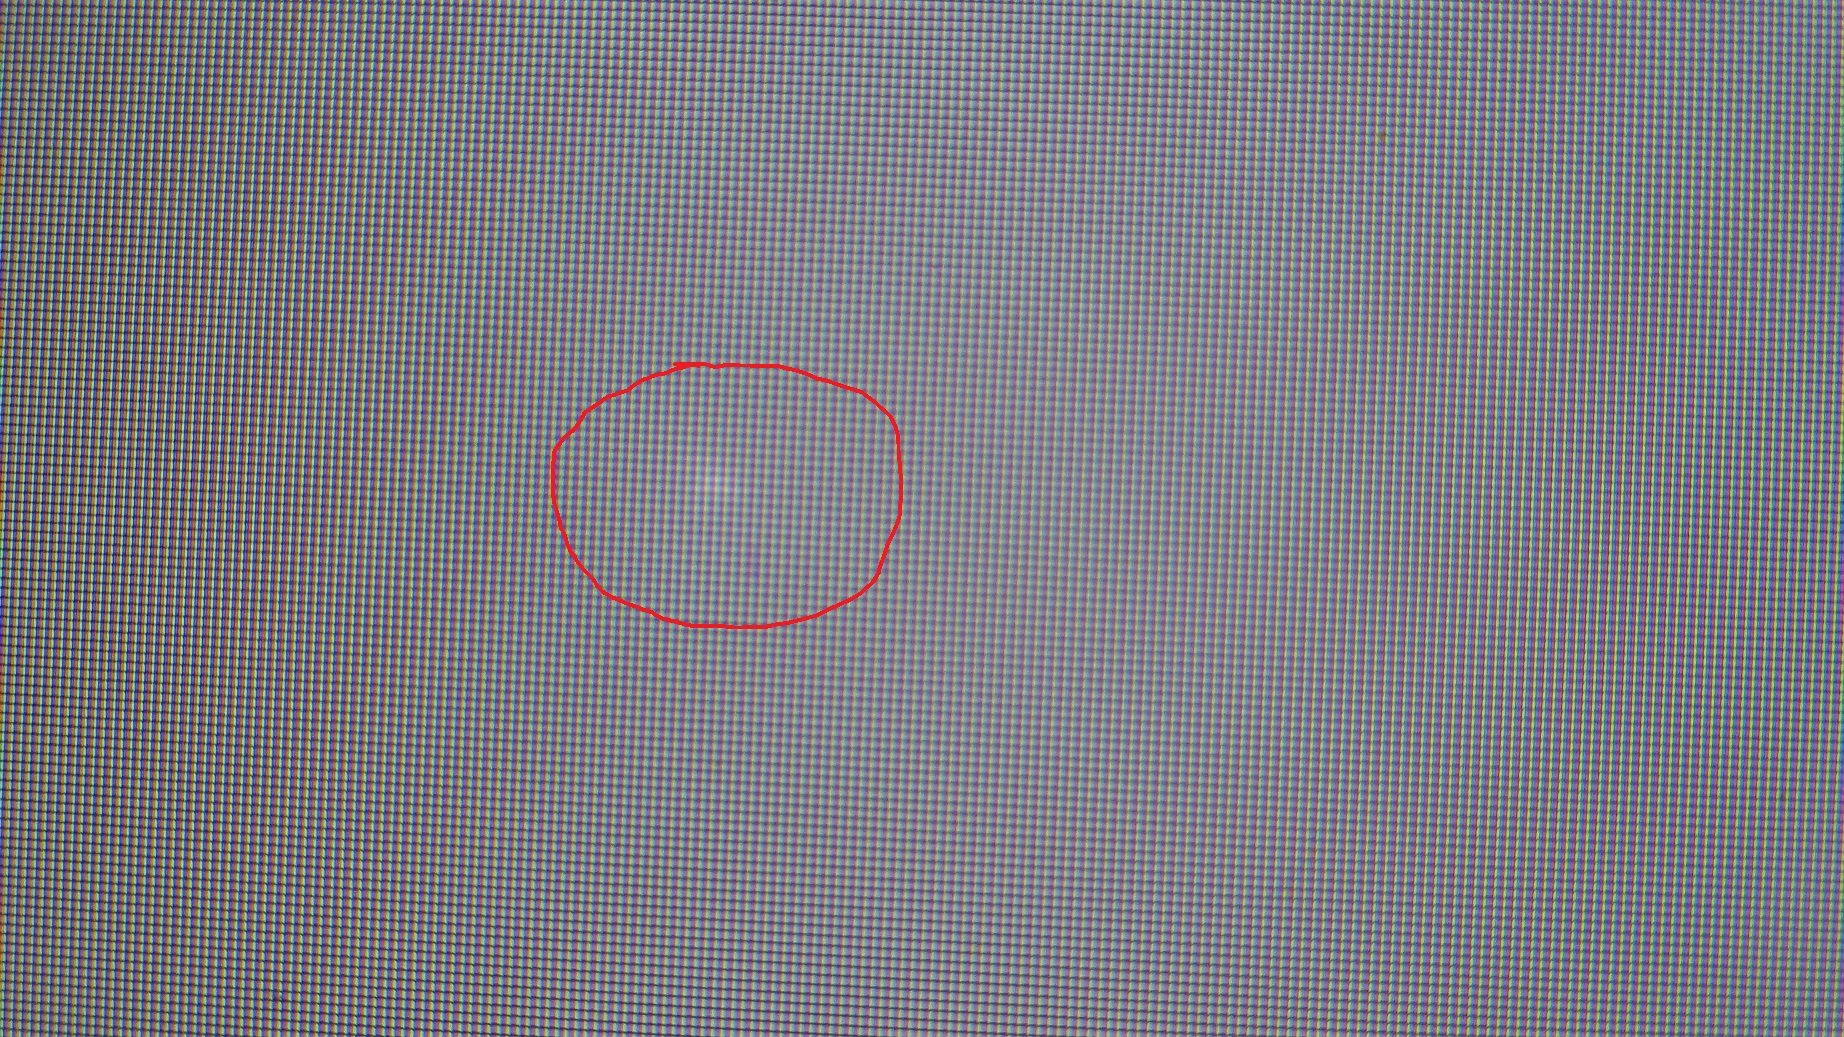 Белые круги на экране. Белые точки н амониторн. Белое пятно на экране. Маленькая точка на экране. Темные пиксели на мониторе.